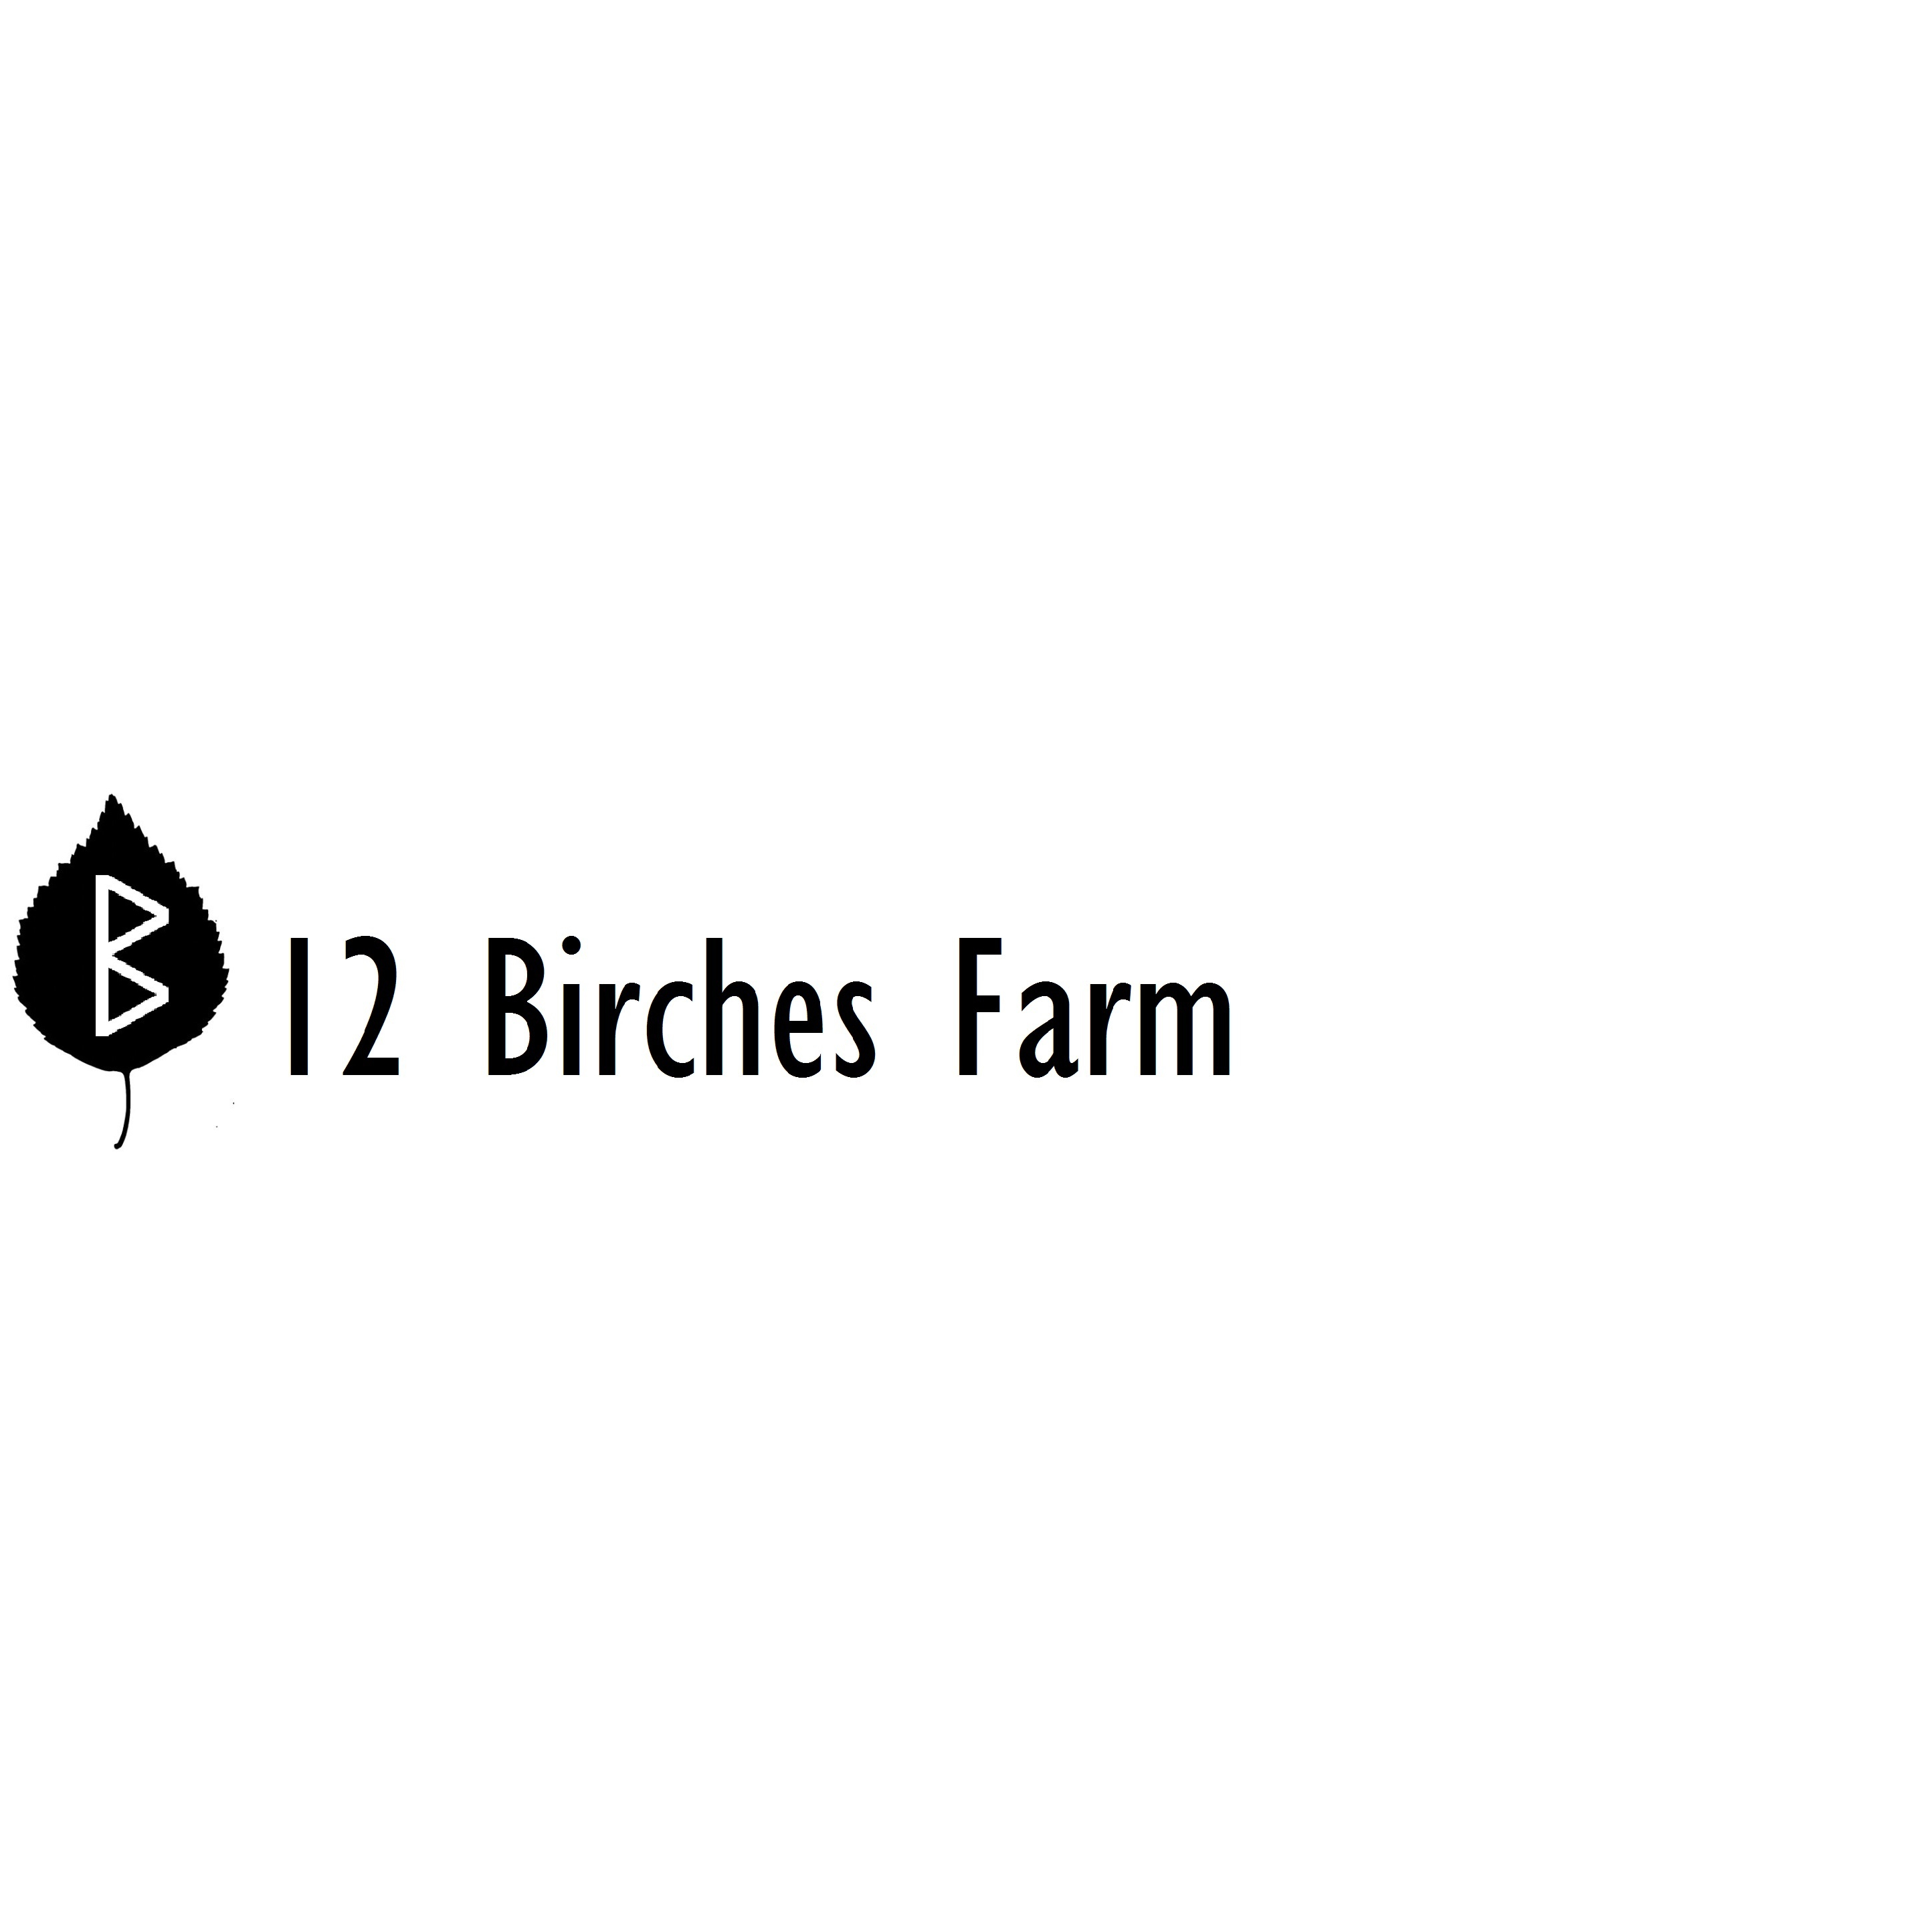 12 Birches Farm